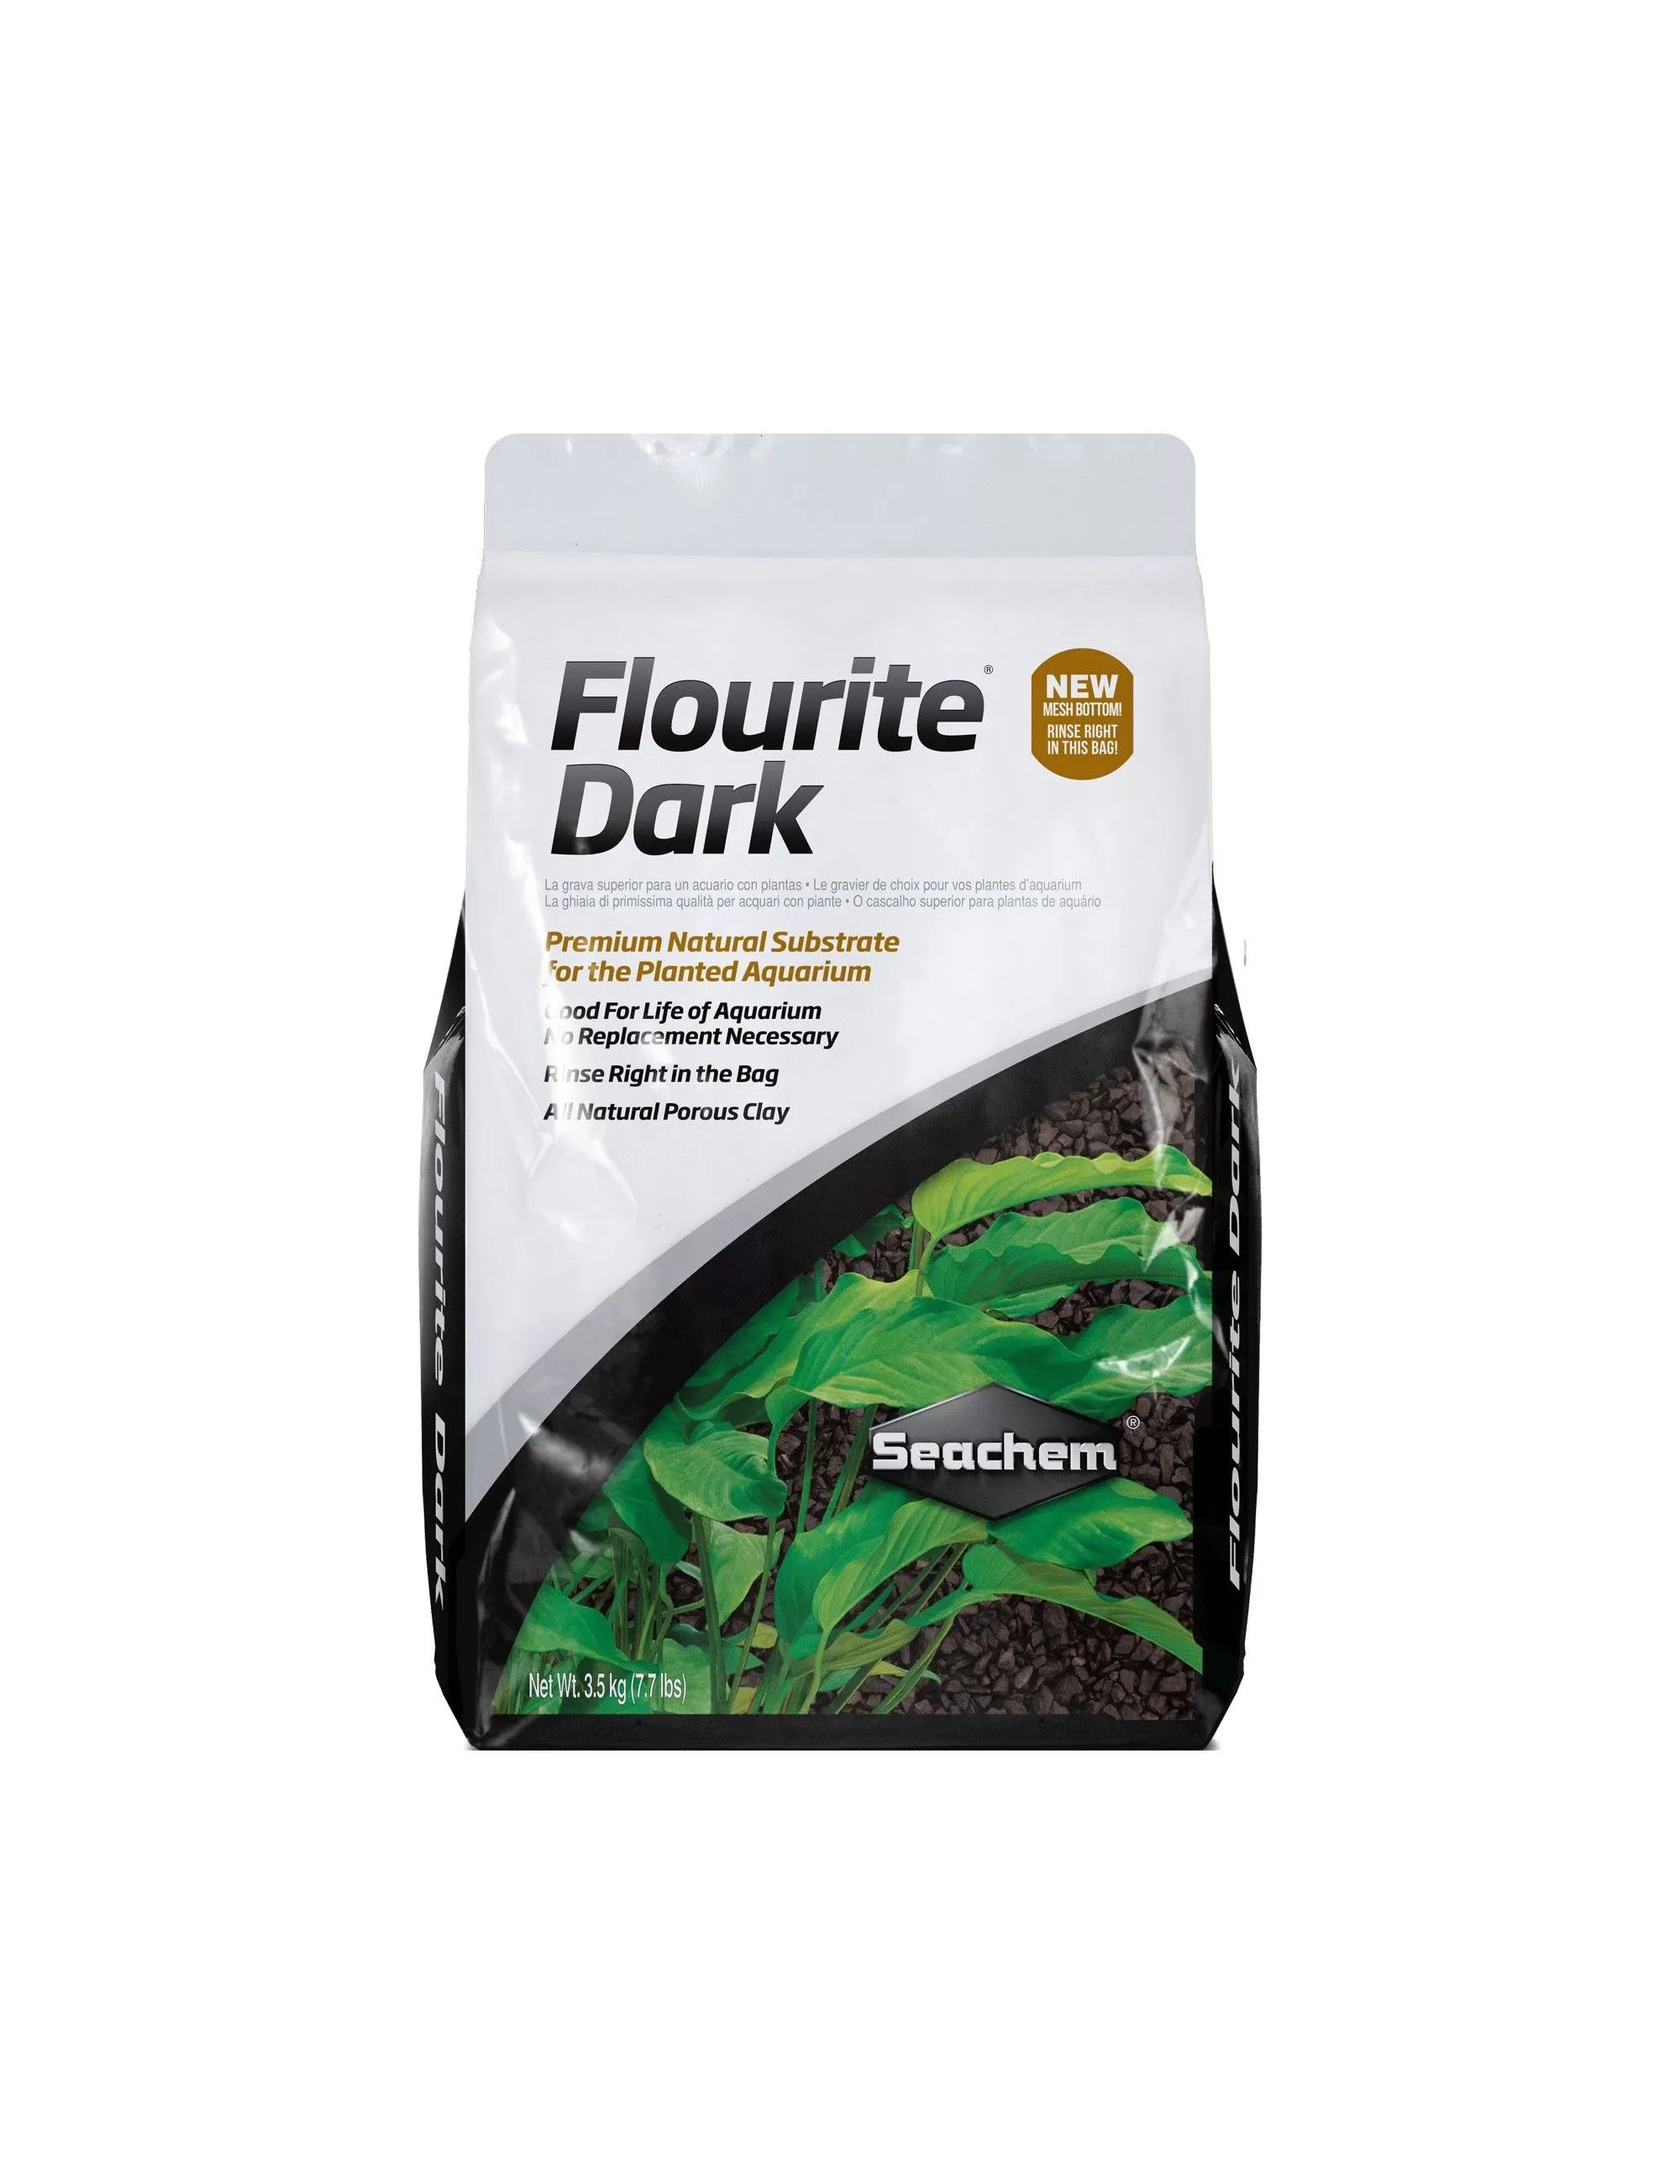 SEACHEM - Flourite Dark - 3,5 kg - Ghiaia naturale di qualità premium per l' acquario con piante